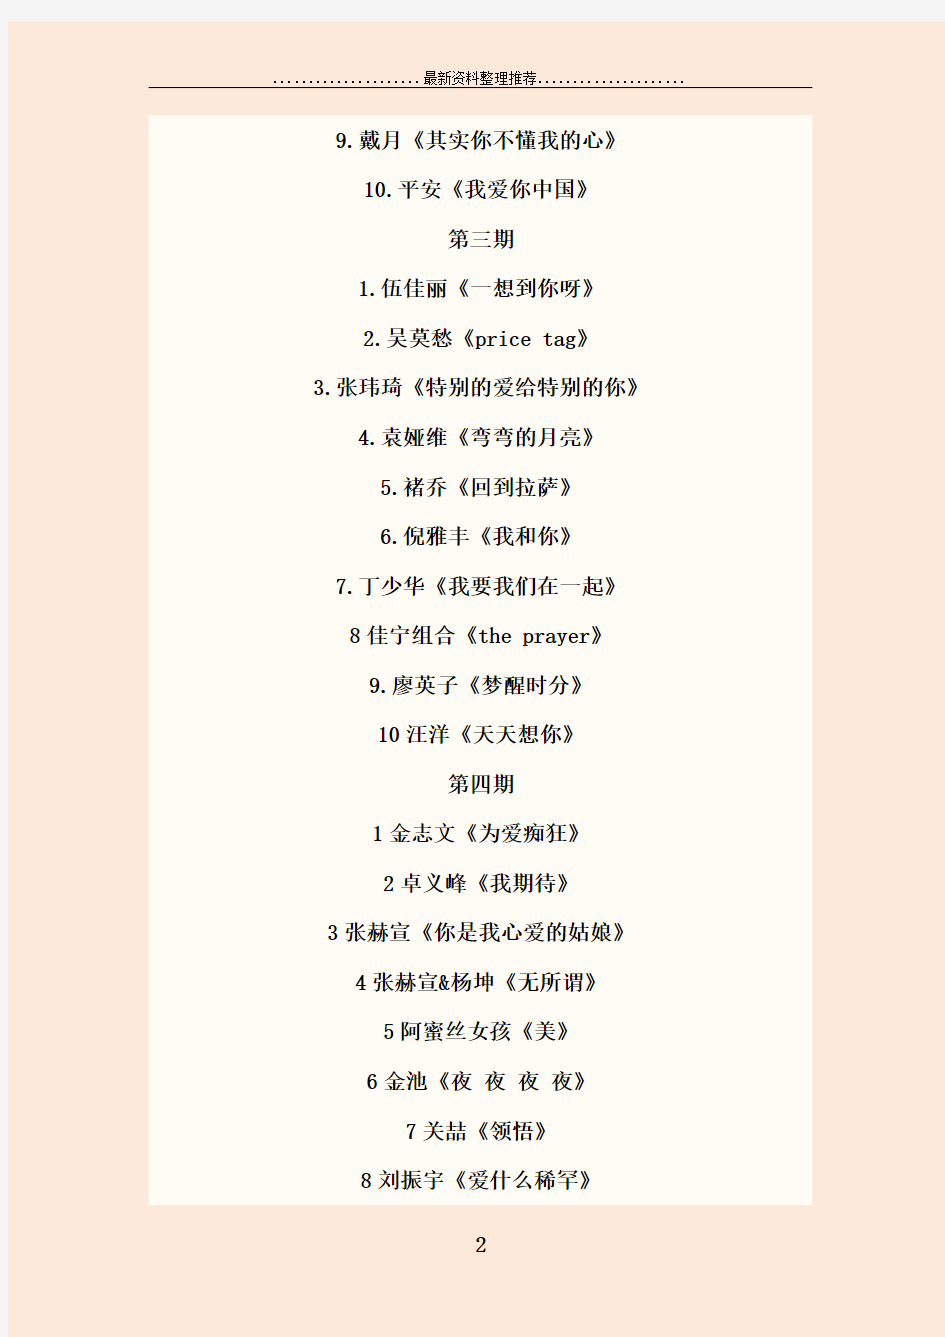 中国好声音全部歌曲名单及下载地址